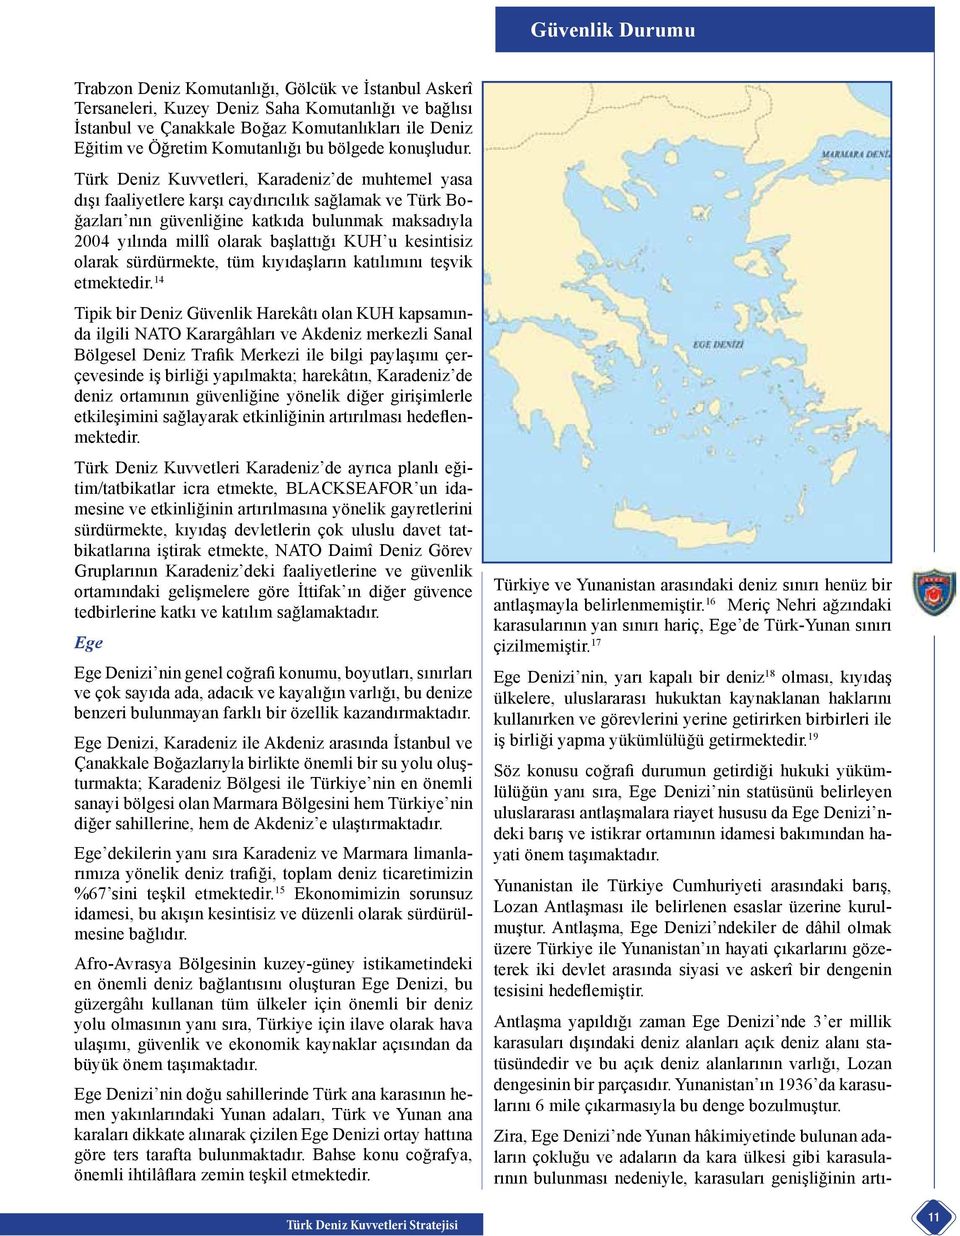 Türk Deniz Kuvvetleri, Karadeniz de muhtemel yasa dışı faaliyetlere karşı caydırıcılık sağlamak ve Türk Boğazları nın güvenliğine katkıda bulunmak maksadıyla 2004 yılında millî olarak başlattığı KUH